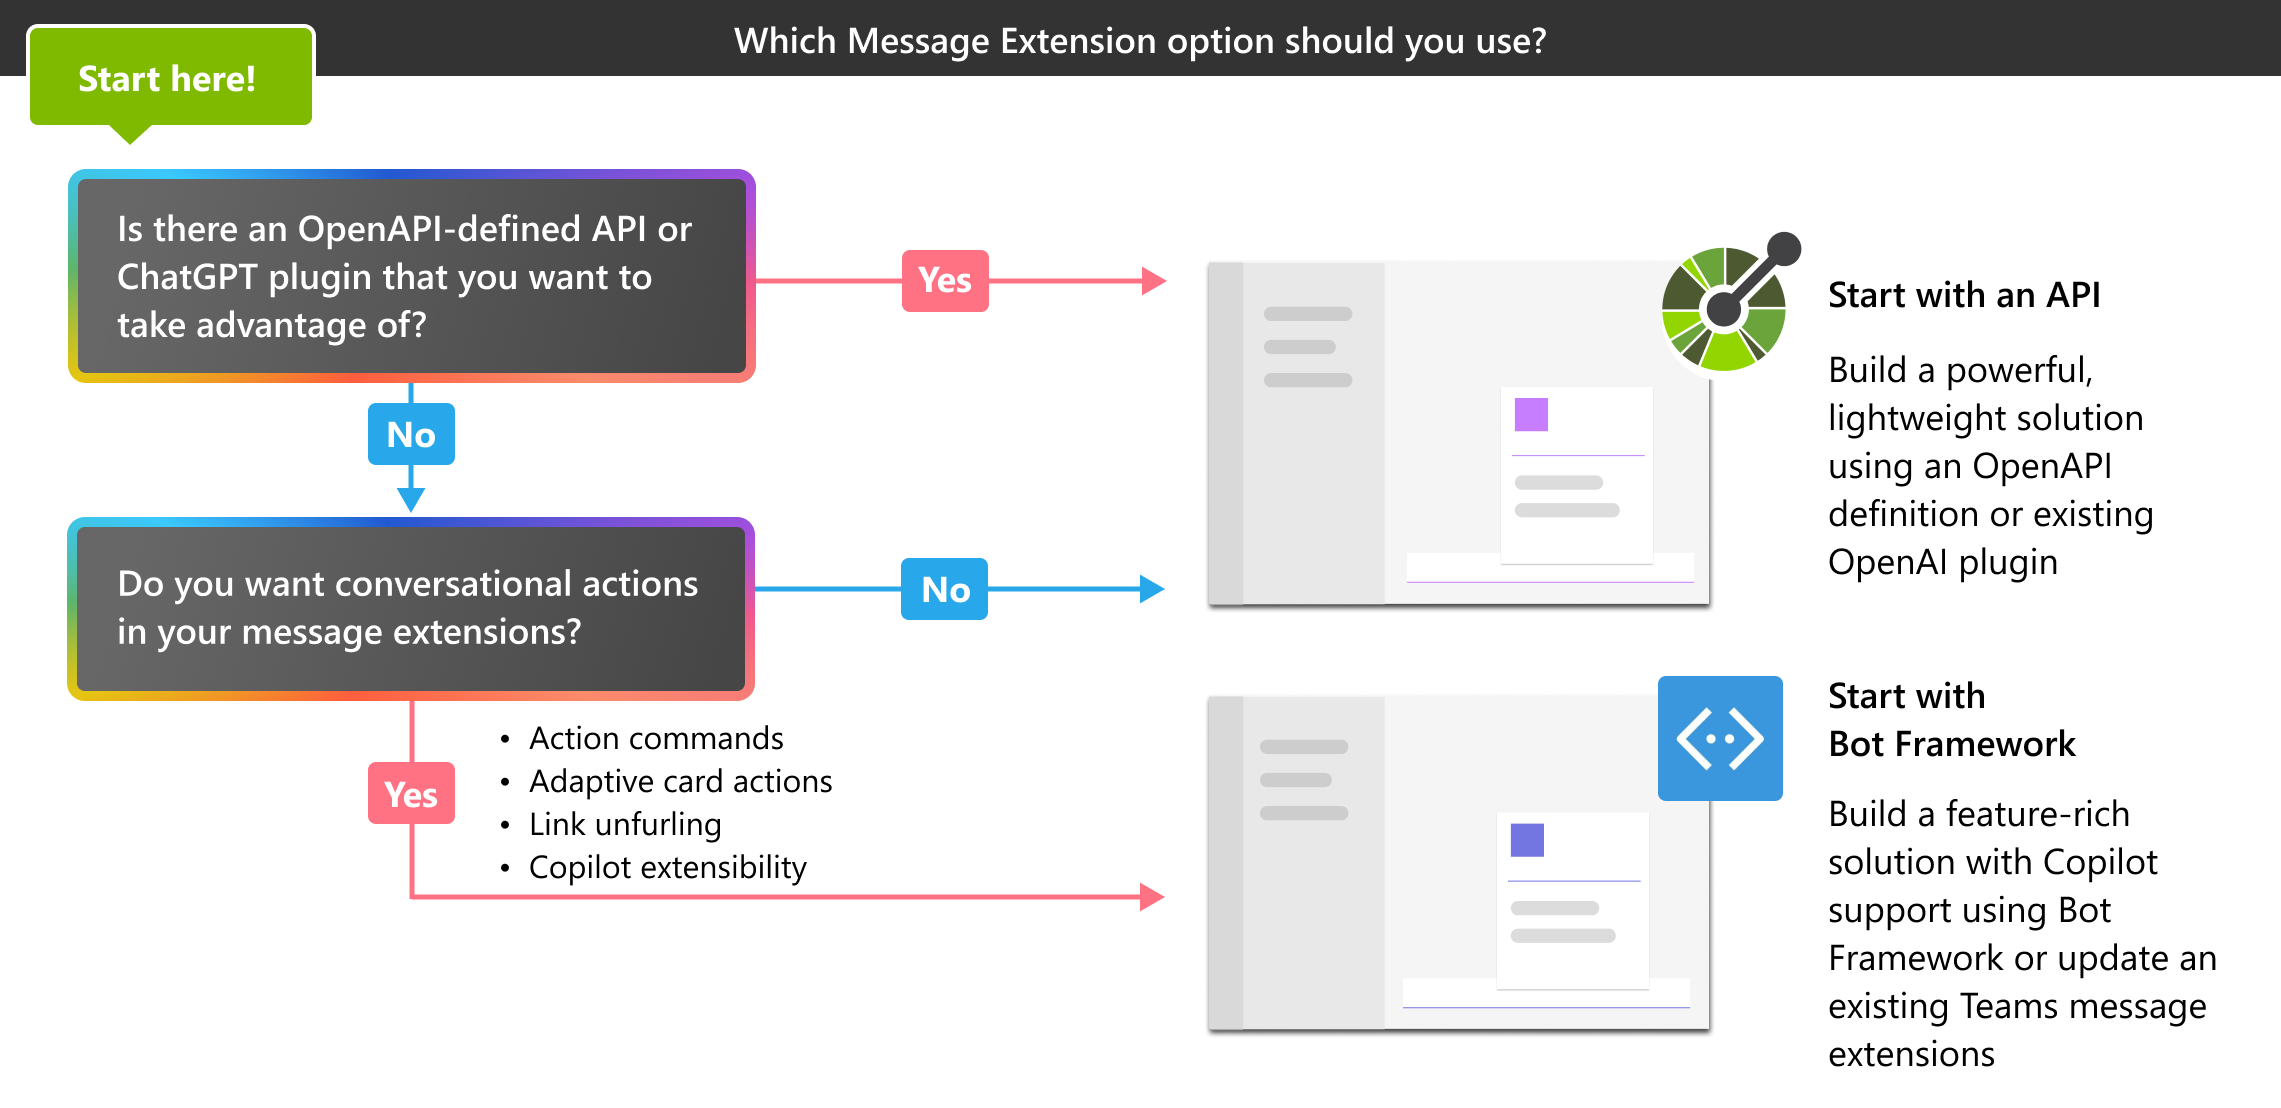 Снимок экрана: дерево принятия решений, которое помогает пользователю выбирать между расширением сообщений на основе API и бота.